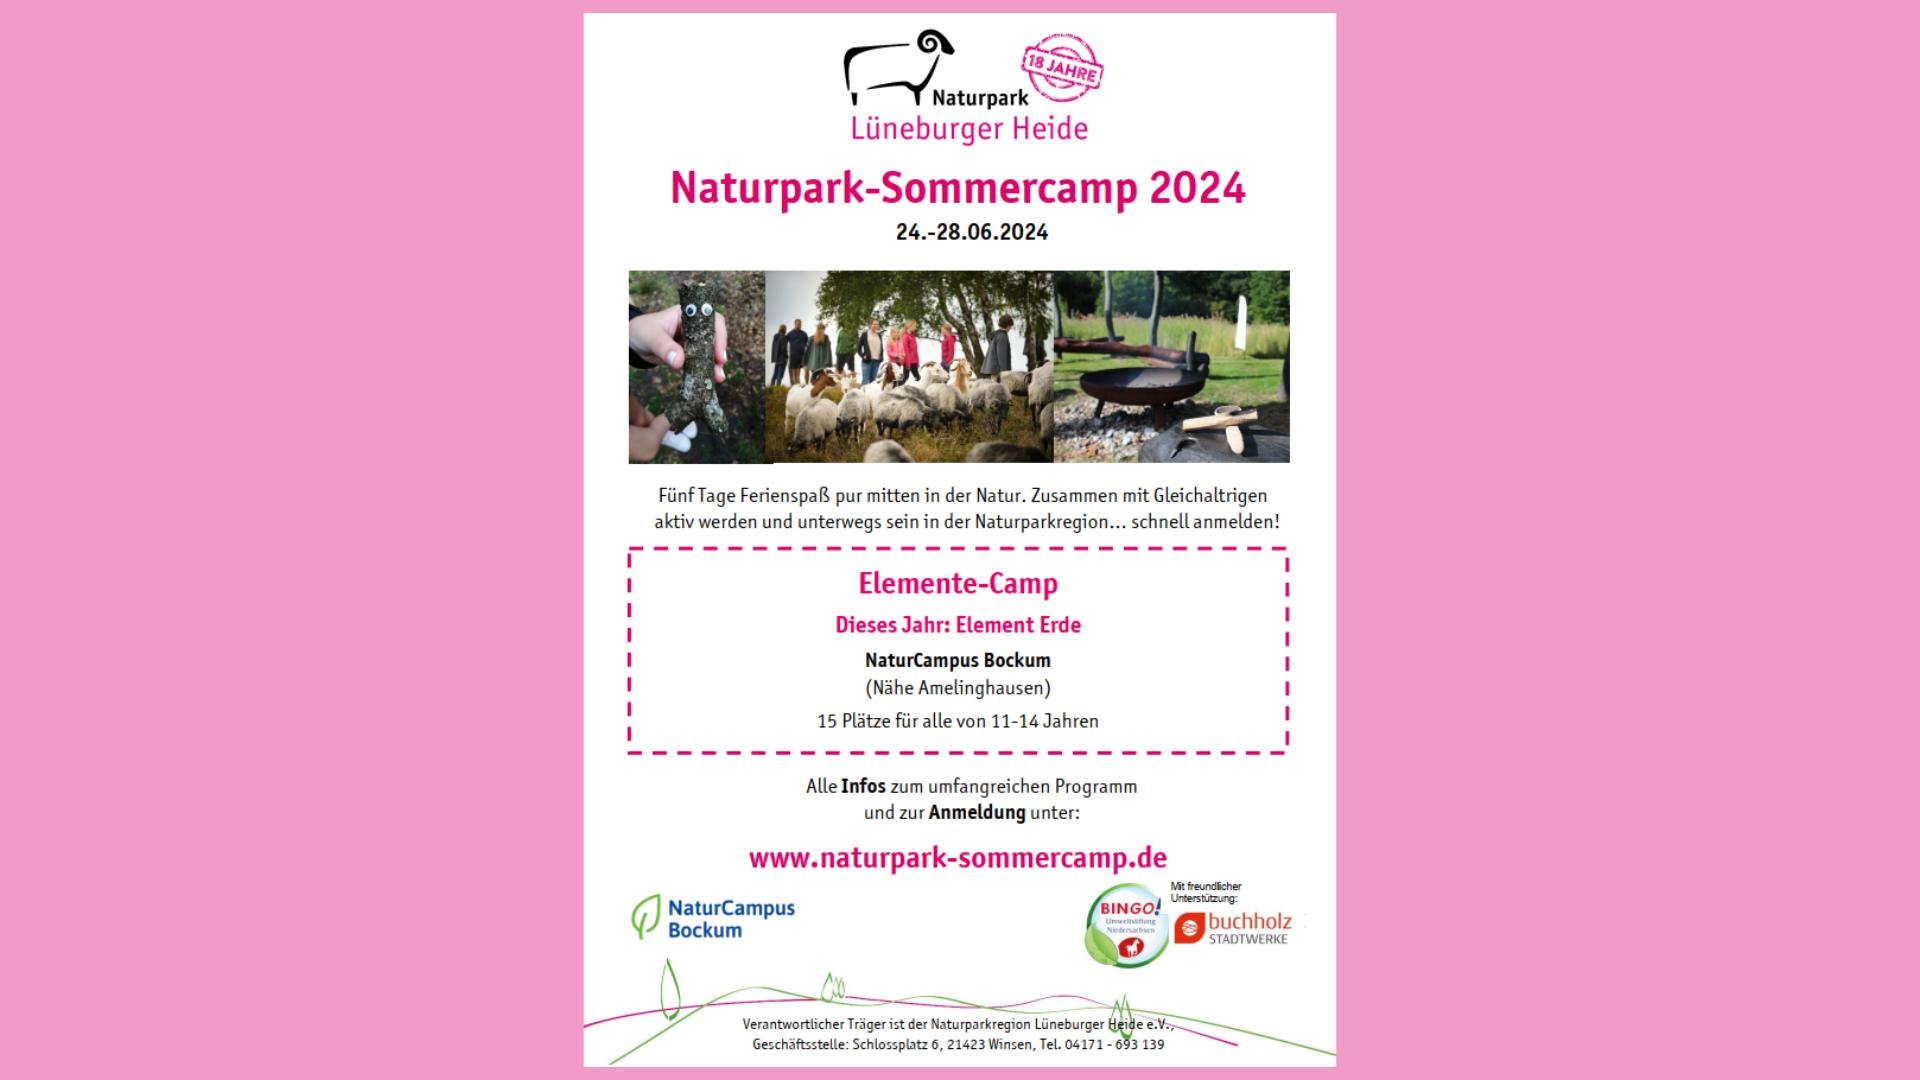 Naturpark-Sommercamp 2024